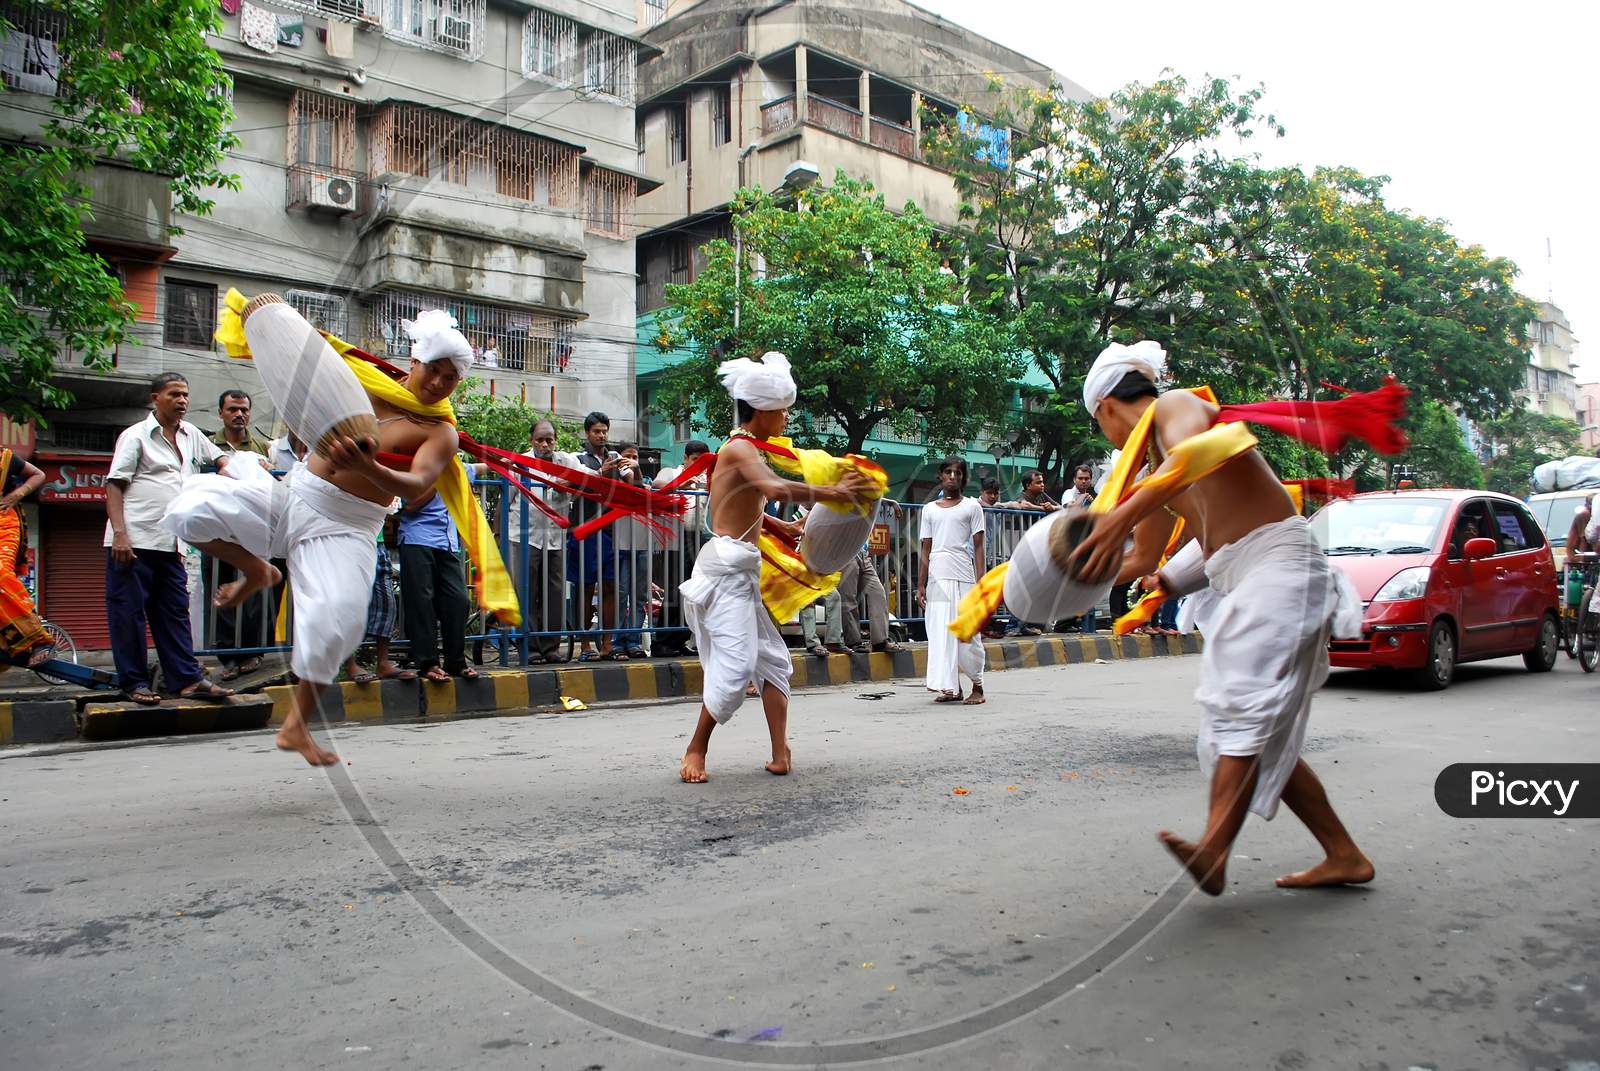 manipuri dancers performing dance during kolkata ratha yatra festival